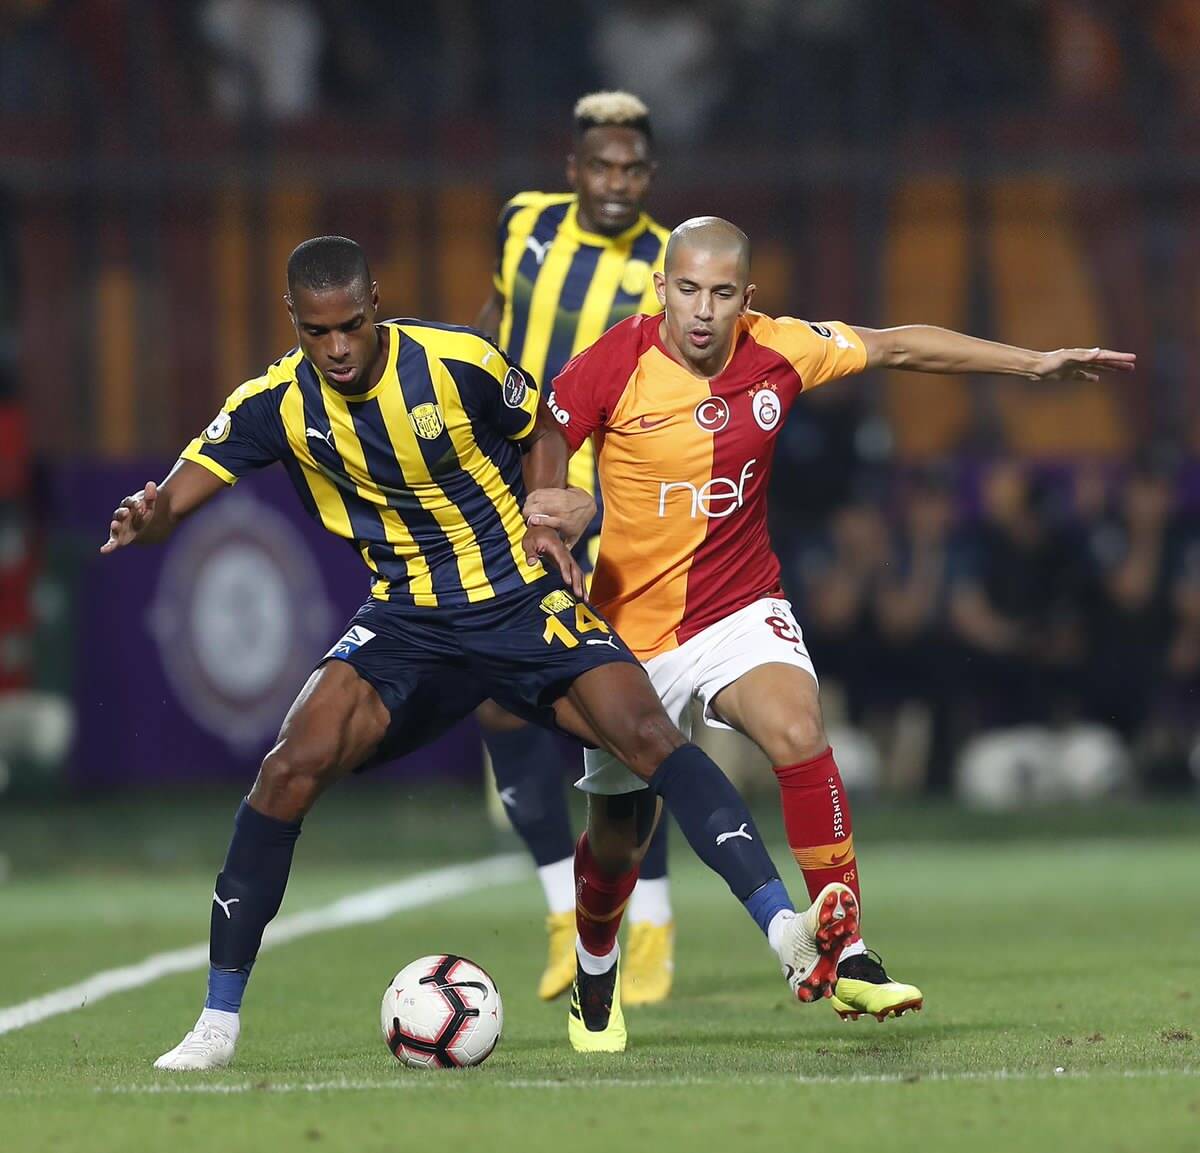 فيغولي يستهل حملة الدفاع عن لقب الدوري التركي بالفوز على أنقرة 8